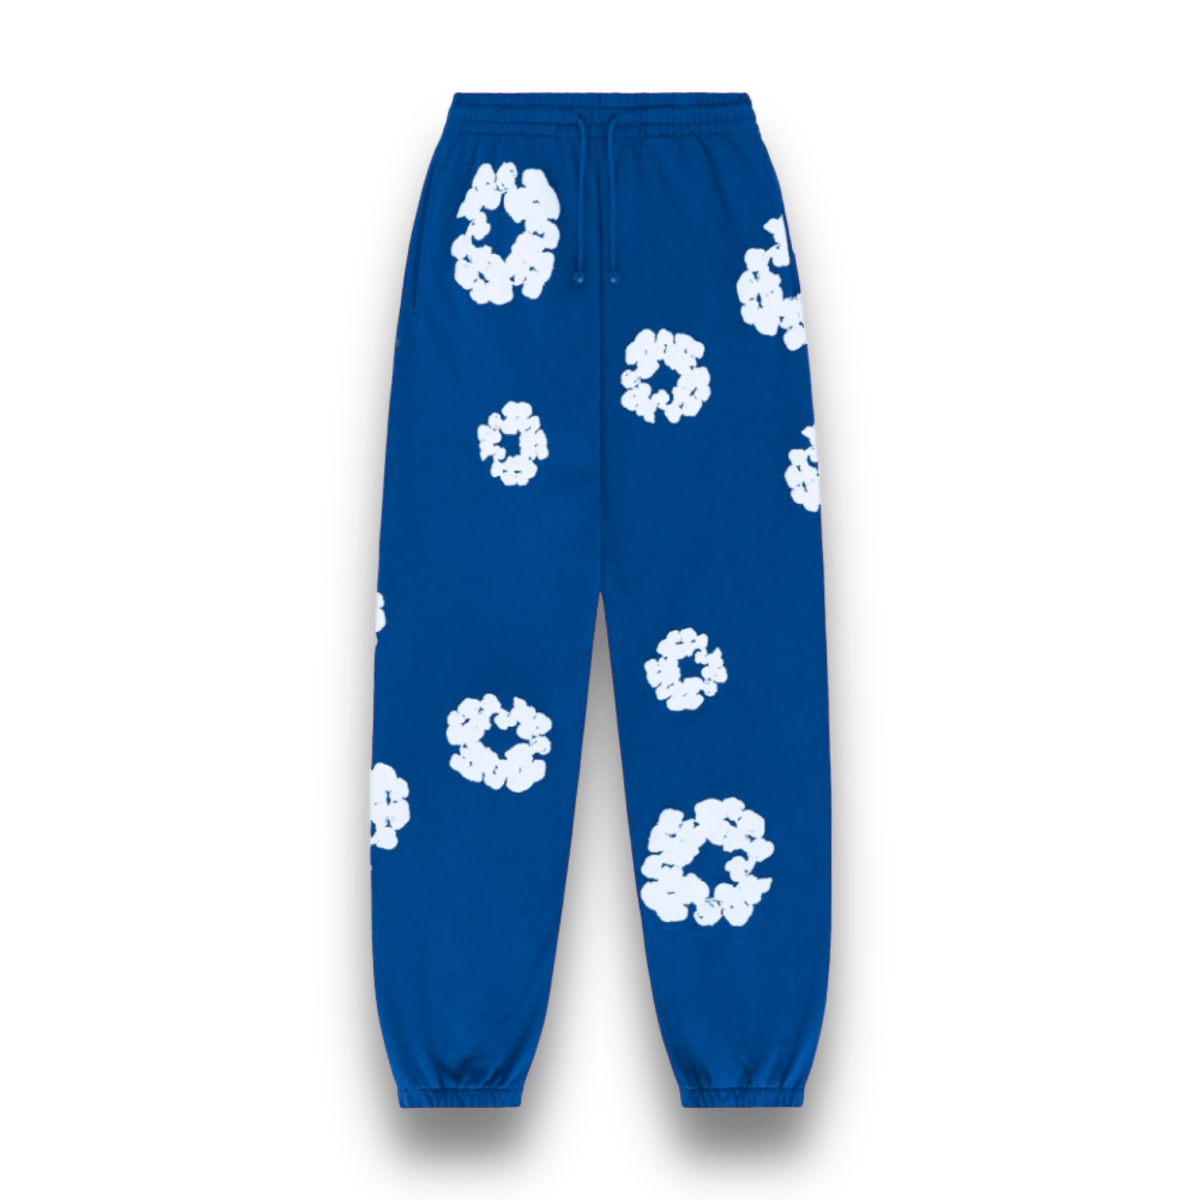 Denim Tears Cotton Wreath Sweatpants Royal Blue - Clothing - Jawns on Fire Sneakers & Streetwear